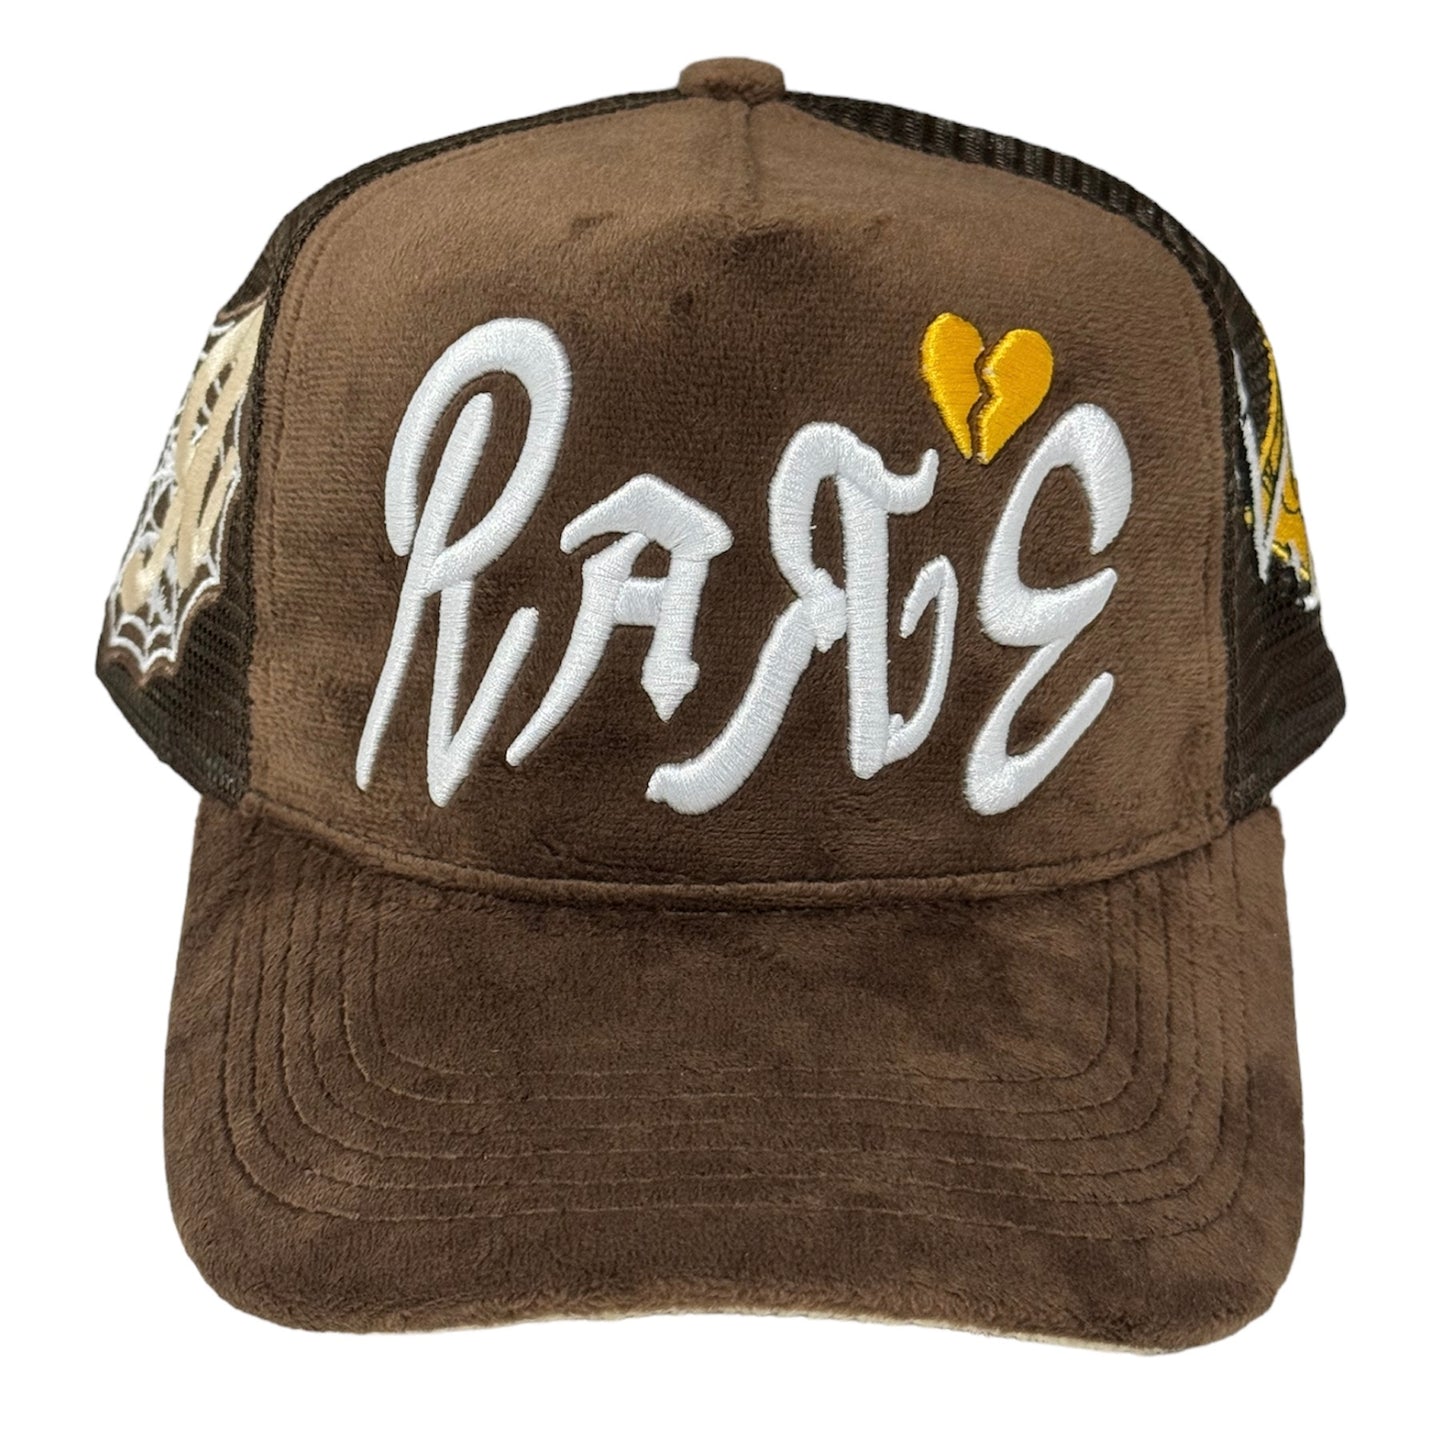 Versatile Is Rare Trucker Hat